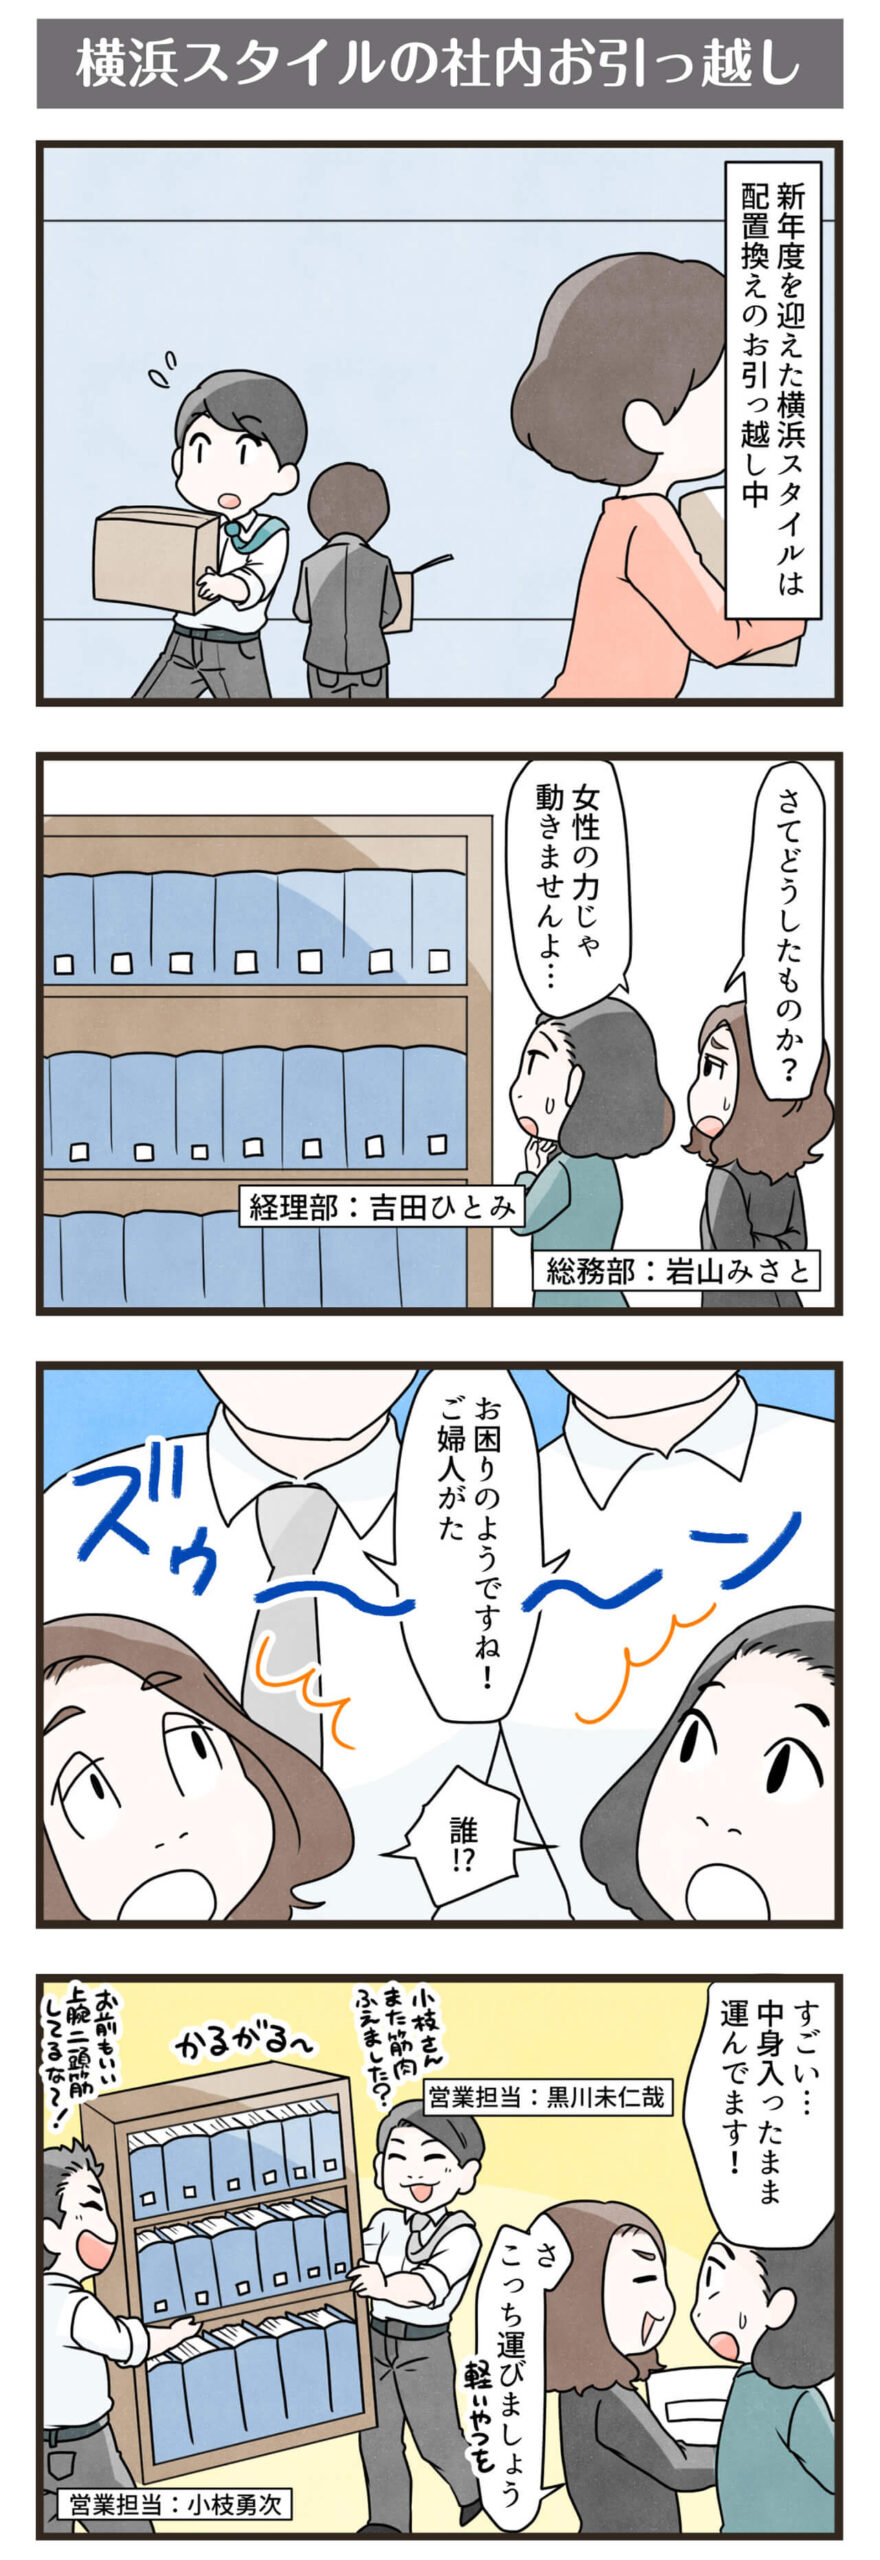 横浜スタイル4コマ漫画2018年4月分